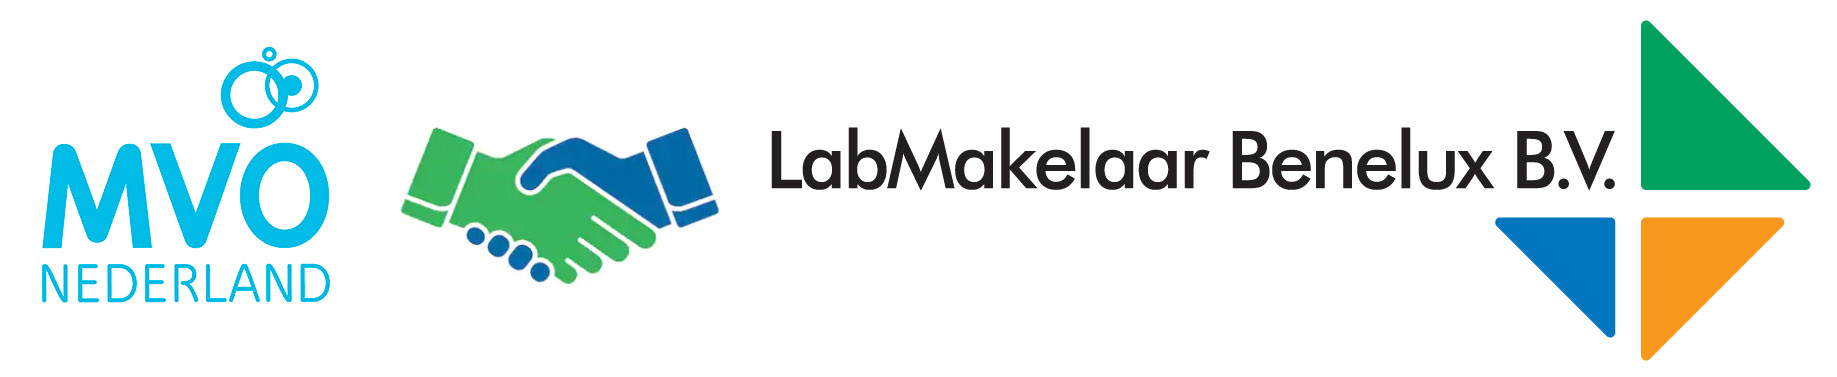 LabMakelaar sluit zich aan bij MVO Nederland